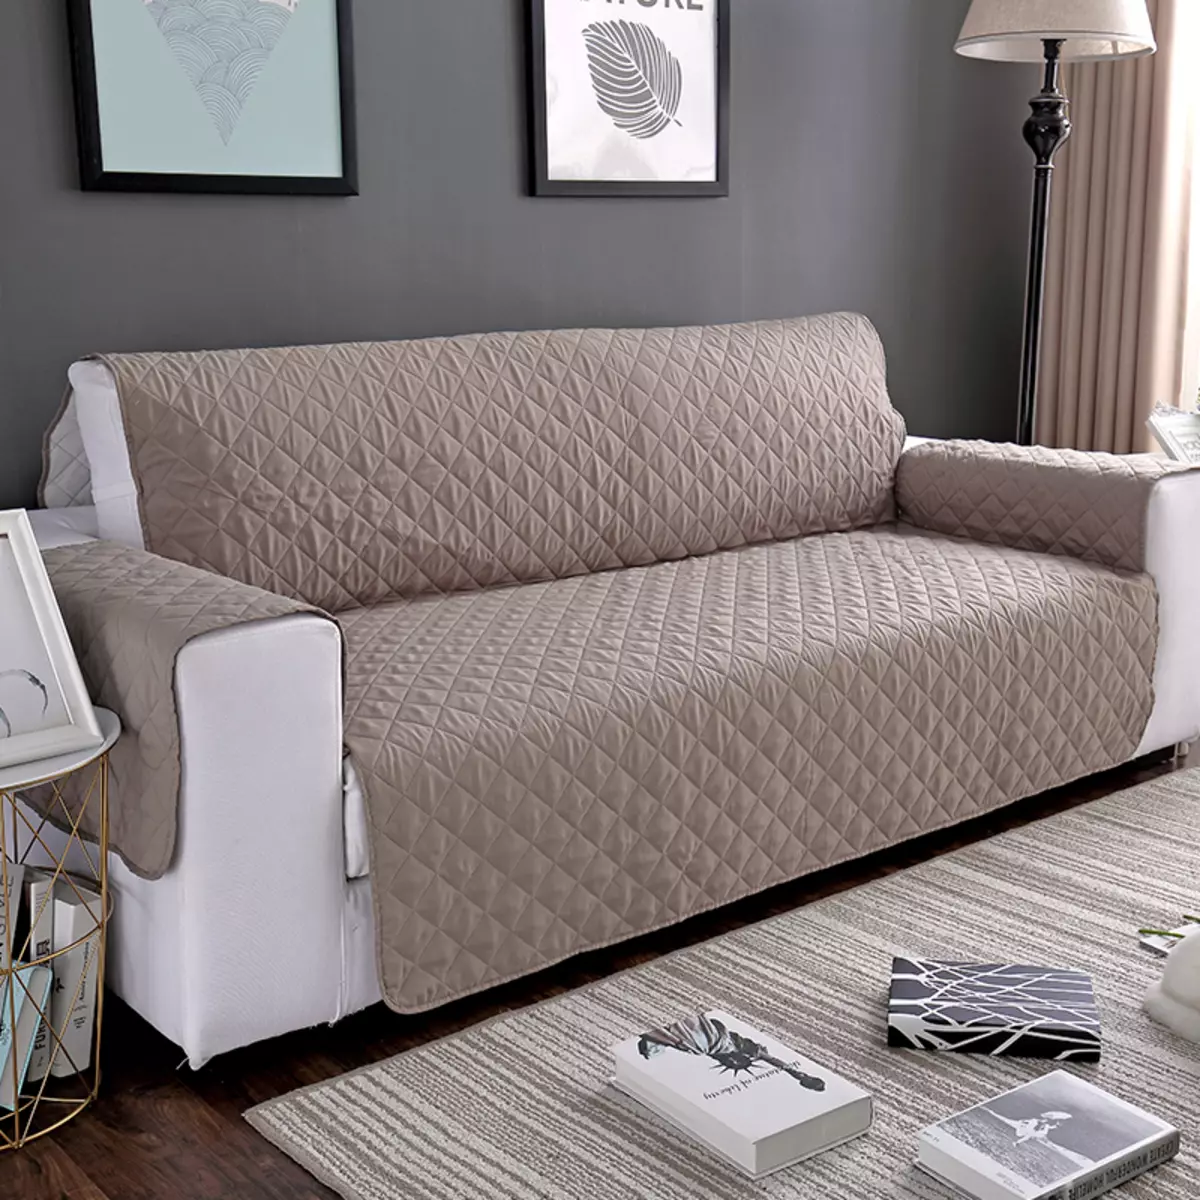 Θήκη στον καναπέ IKEA: Επιλογή κλινοσκεπασμάτων για γωνιακούς καναπέδες χωρίς υποβραχιόνια, καθολικά καλύμματα και άλλες επιλογές 8963_9